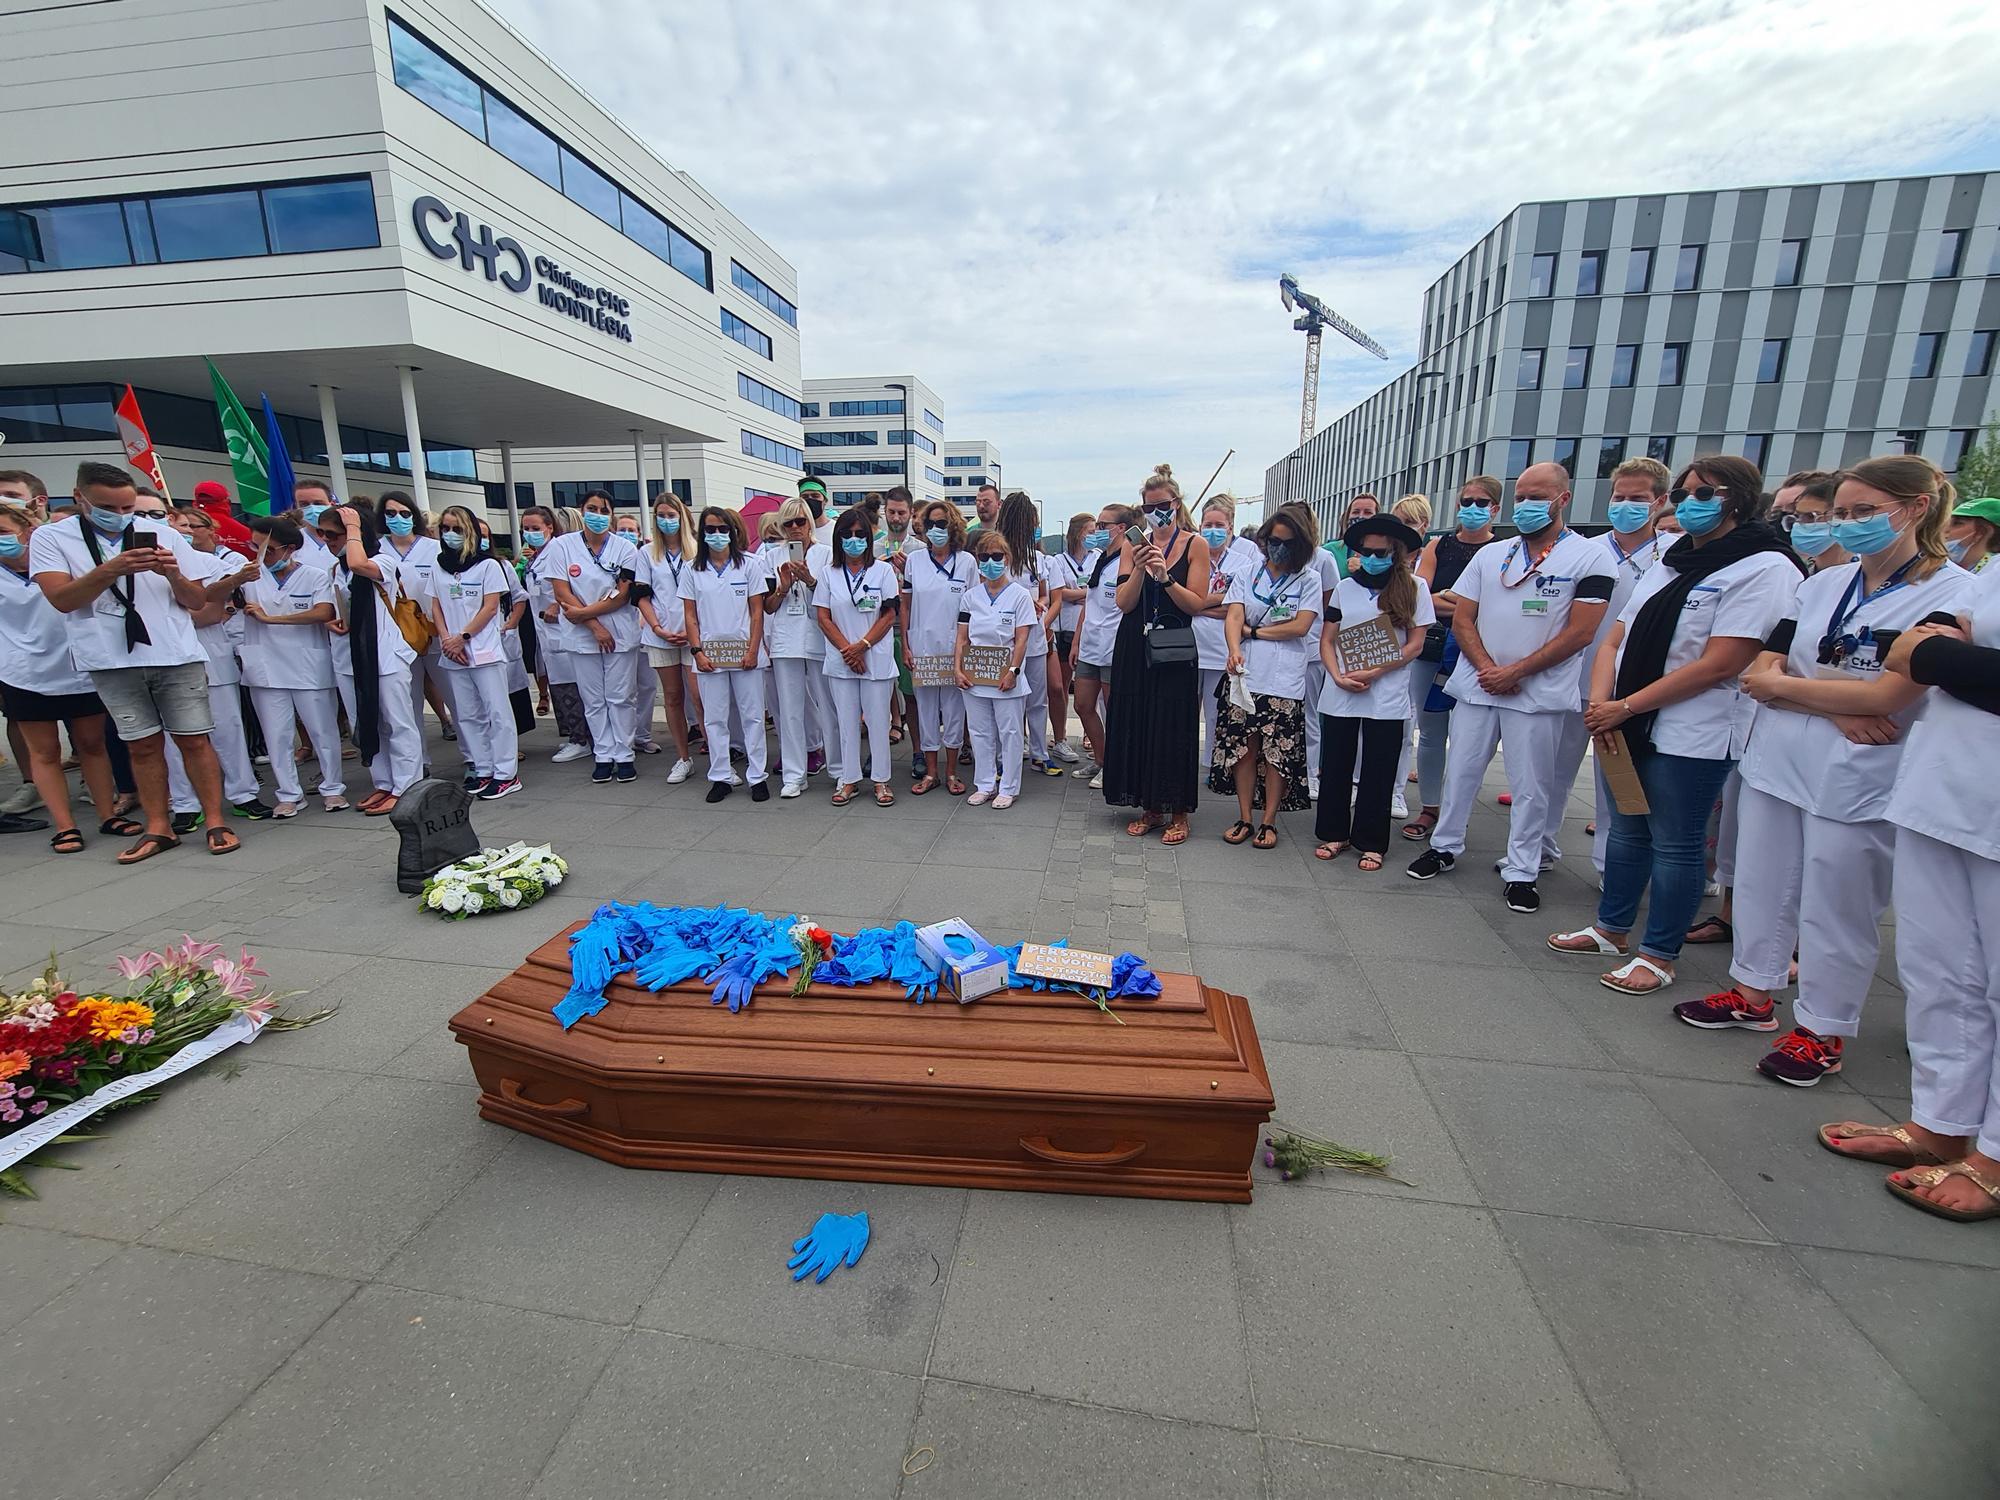 Manifestation du personnel soignant au CHC Montlegia de Liège le 17 juin 2021.